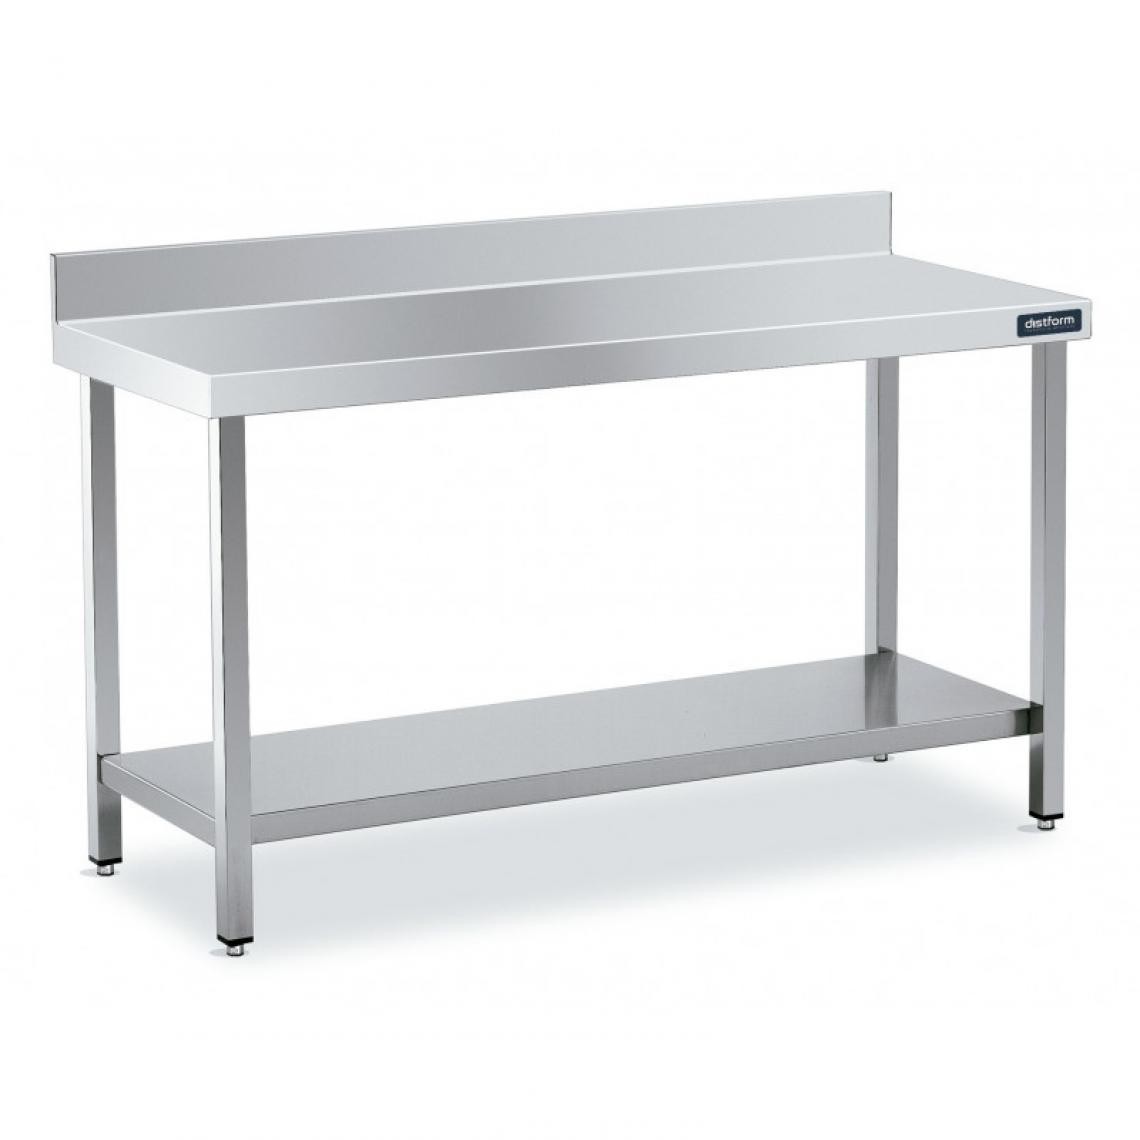 DISTFORM - Table Adossée en Inox avec 1 étagère Profondeur 550 mm - Distform - Acier inoxydable1800x550 - Tables à manger